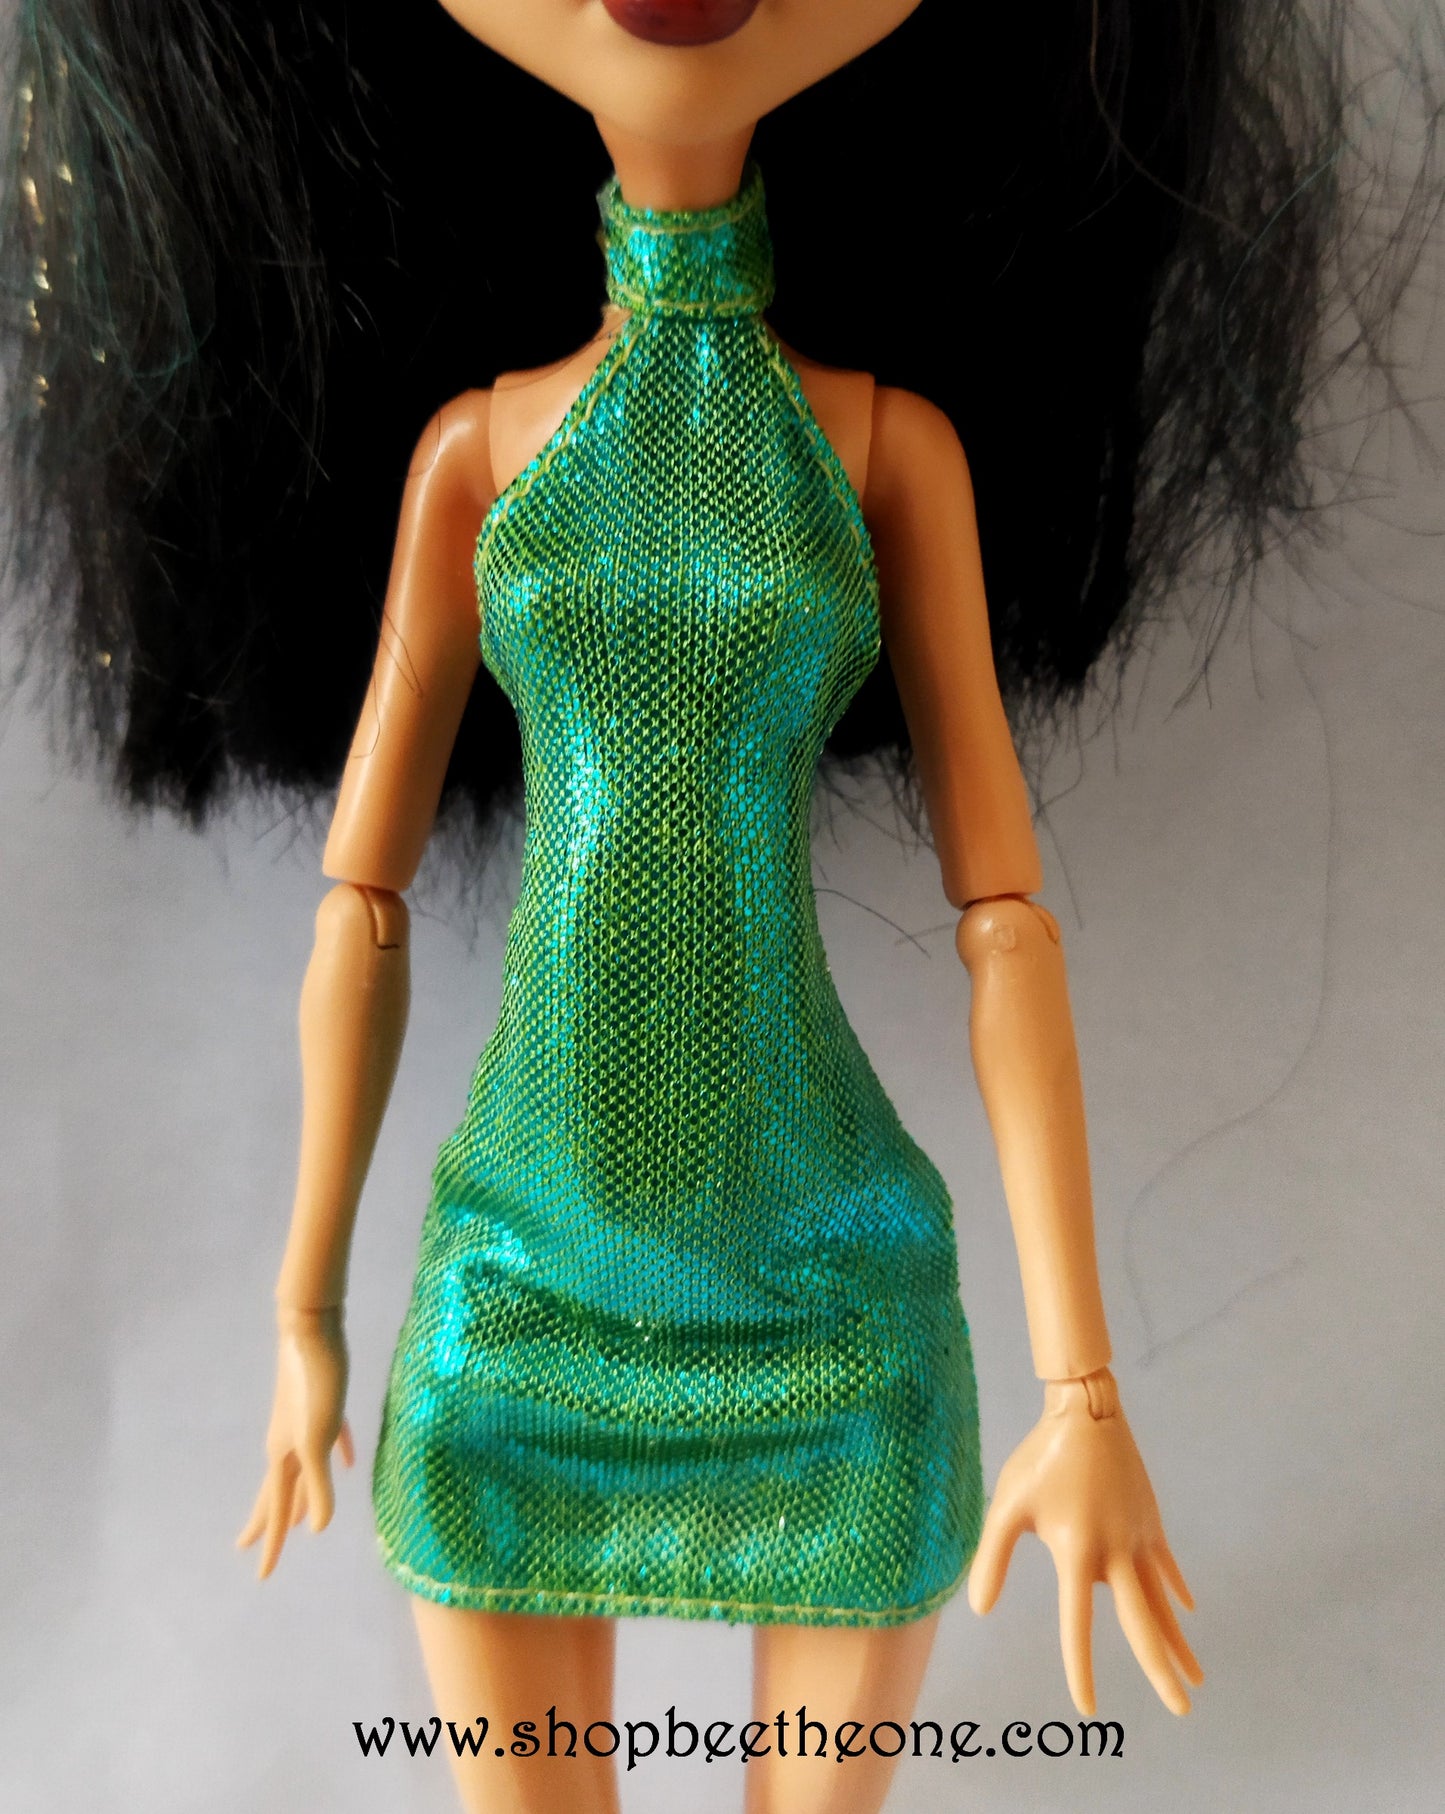 Scarah Screams I Love fashion - Exclusivité - Mattel 2013 - Vêtement